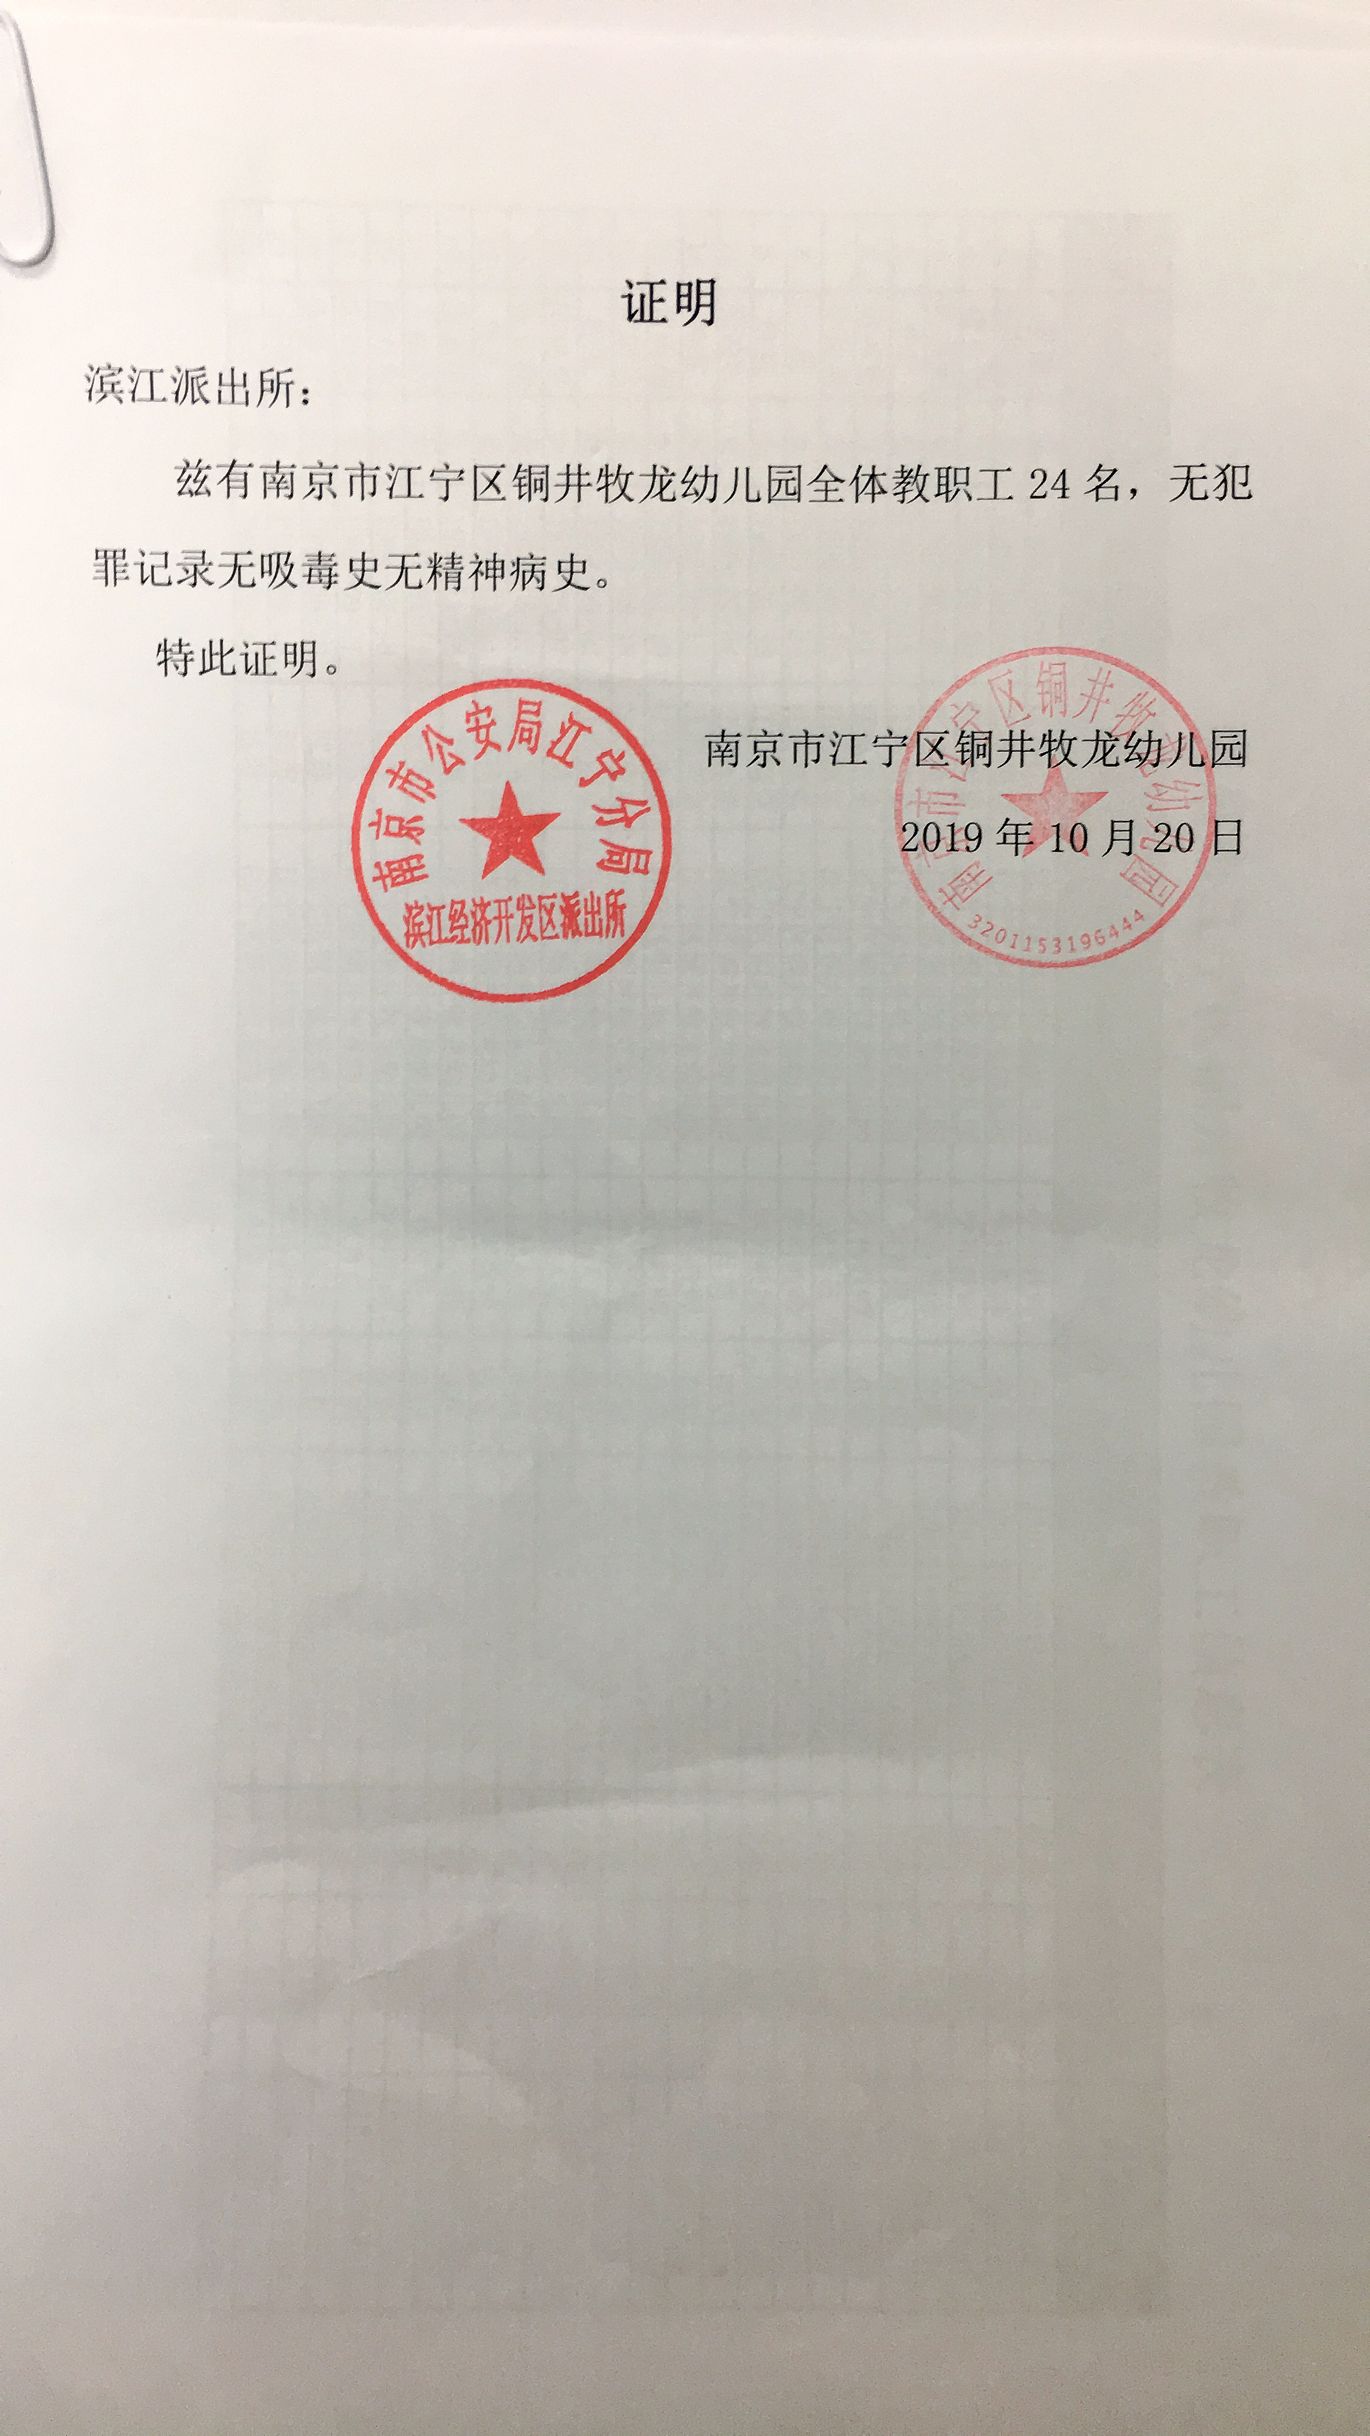 2019铜井牧龙幼儿园全体教职工无犯罪记录证明